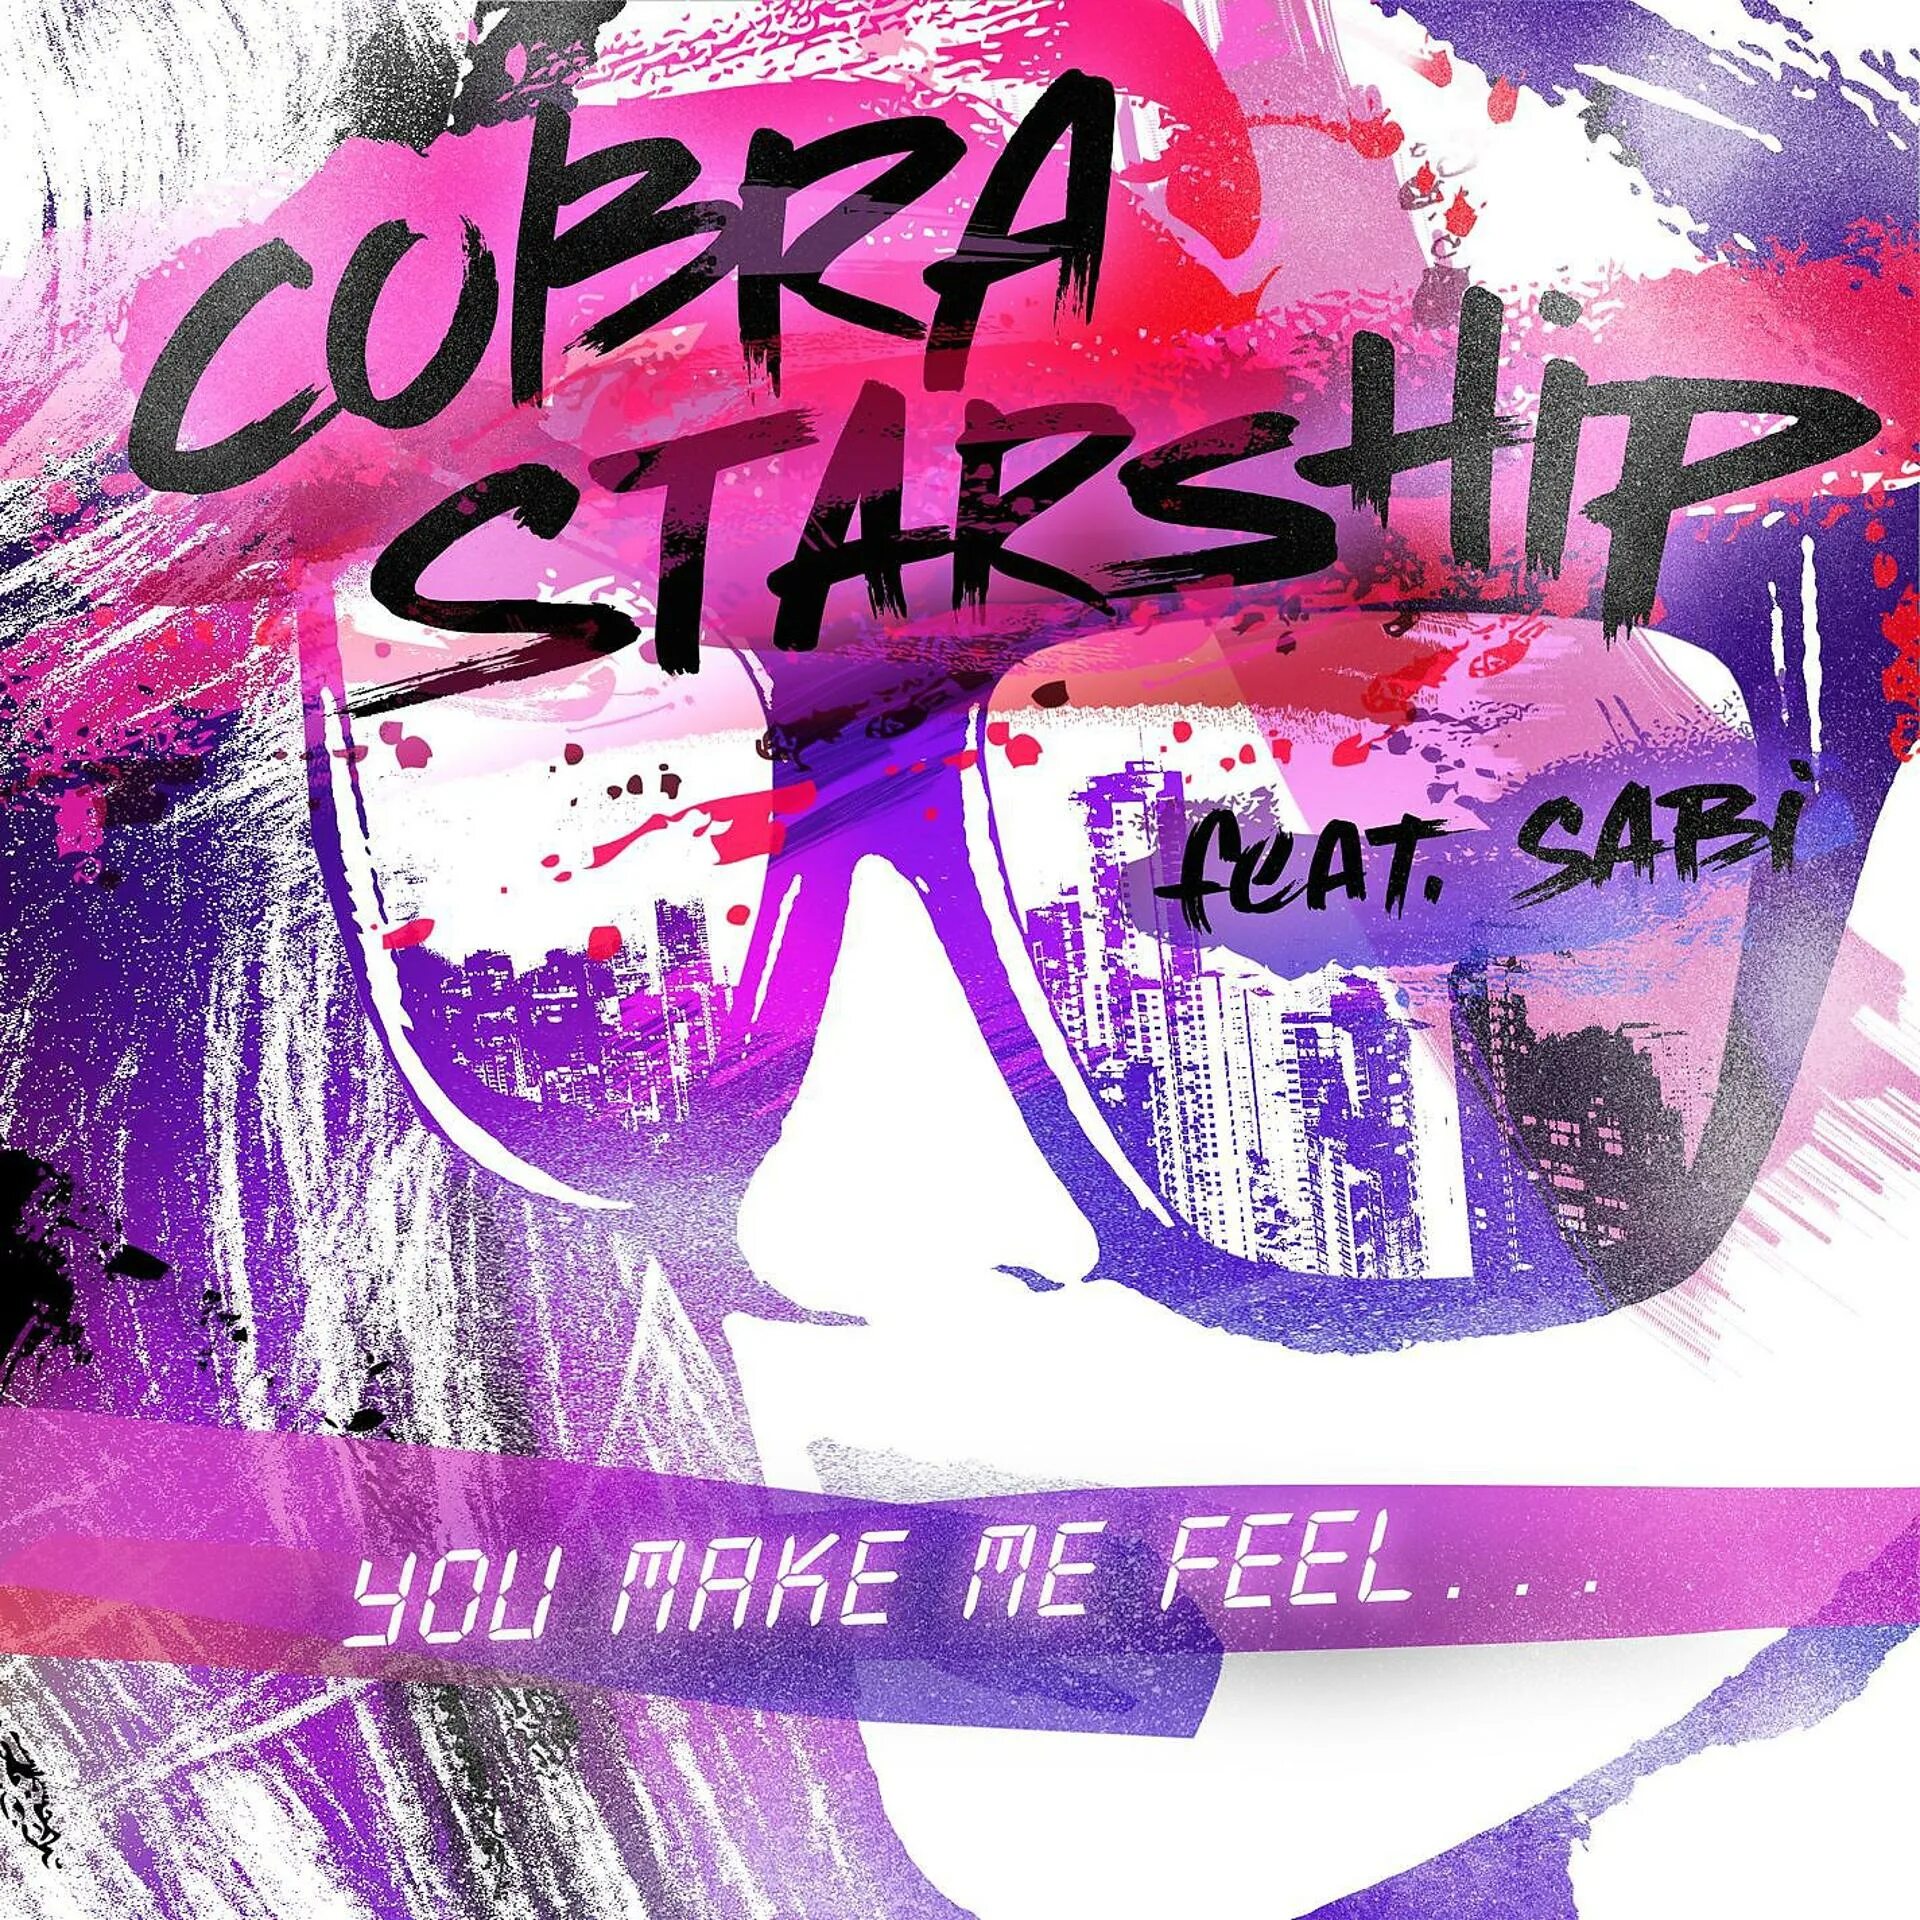 You make me feel the best. You make me feel Cobra. Cobra Starship. You make me feel. Cobra Starship - you make me feel... (Feat. Sabi).